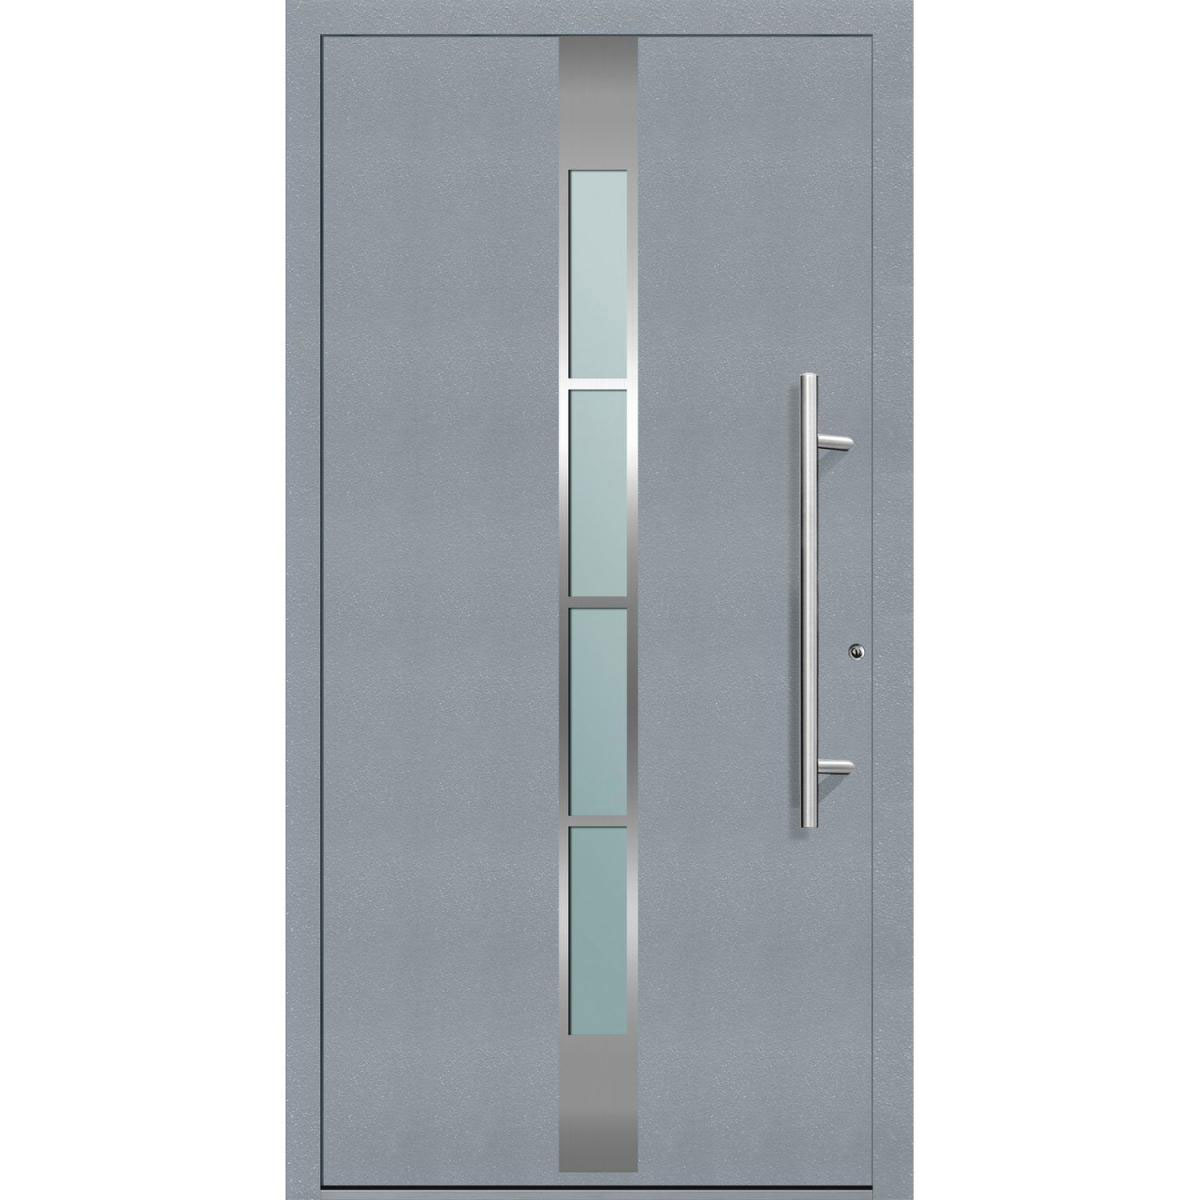 Aluminium Sicherheits-Haustür „Ferrara Exklusiv“, 75mm, grau, 100x210 cm, Anschlag rechts, inkl. Griffset